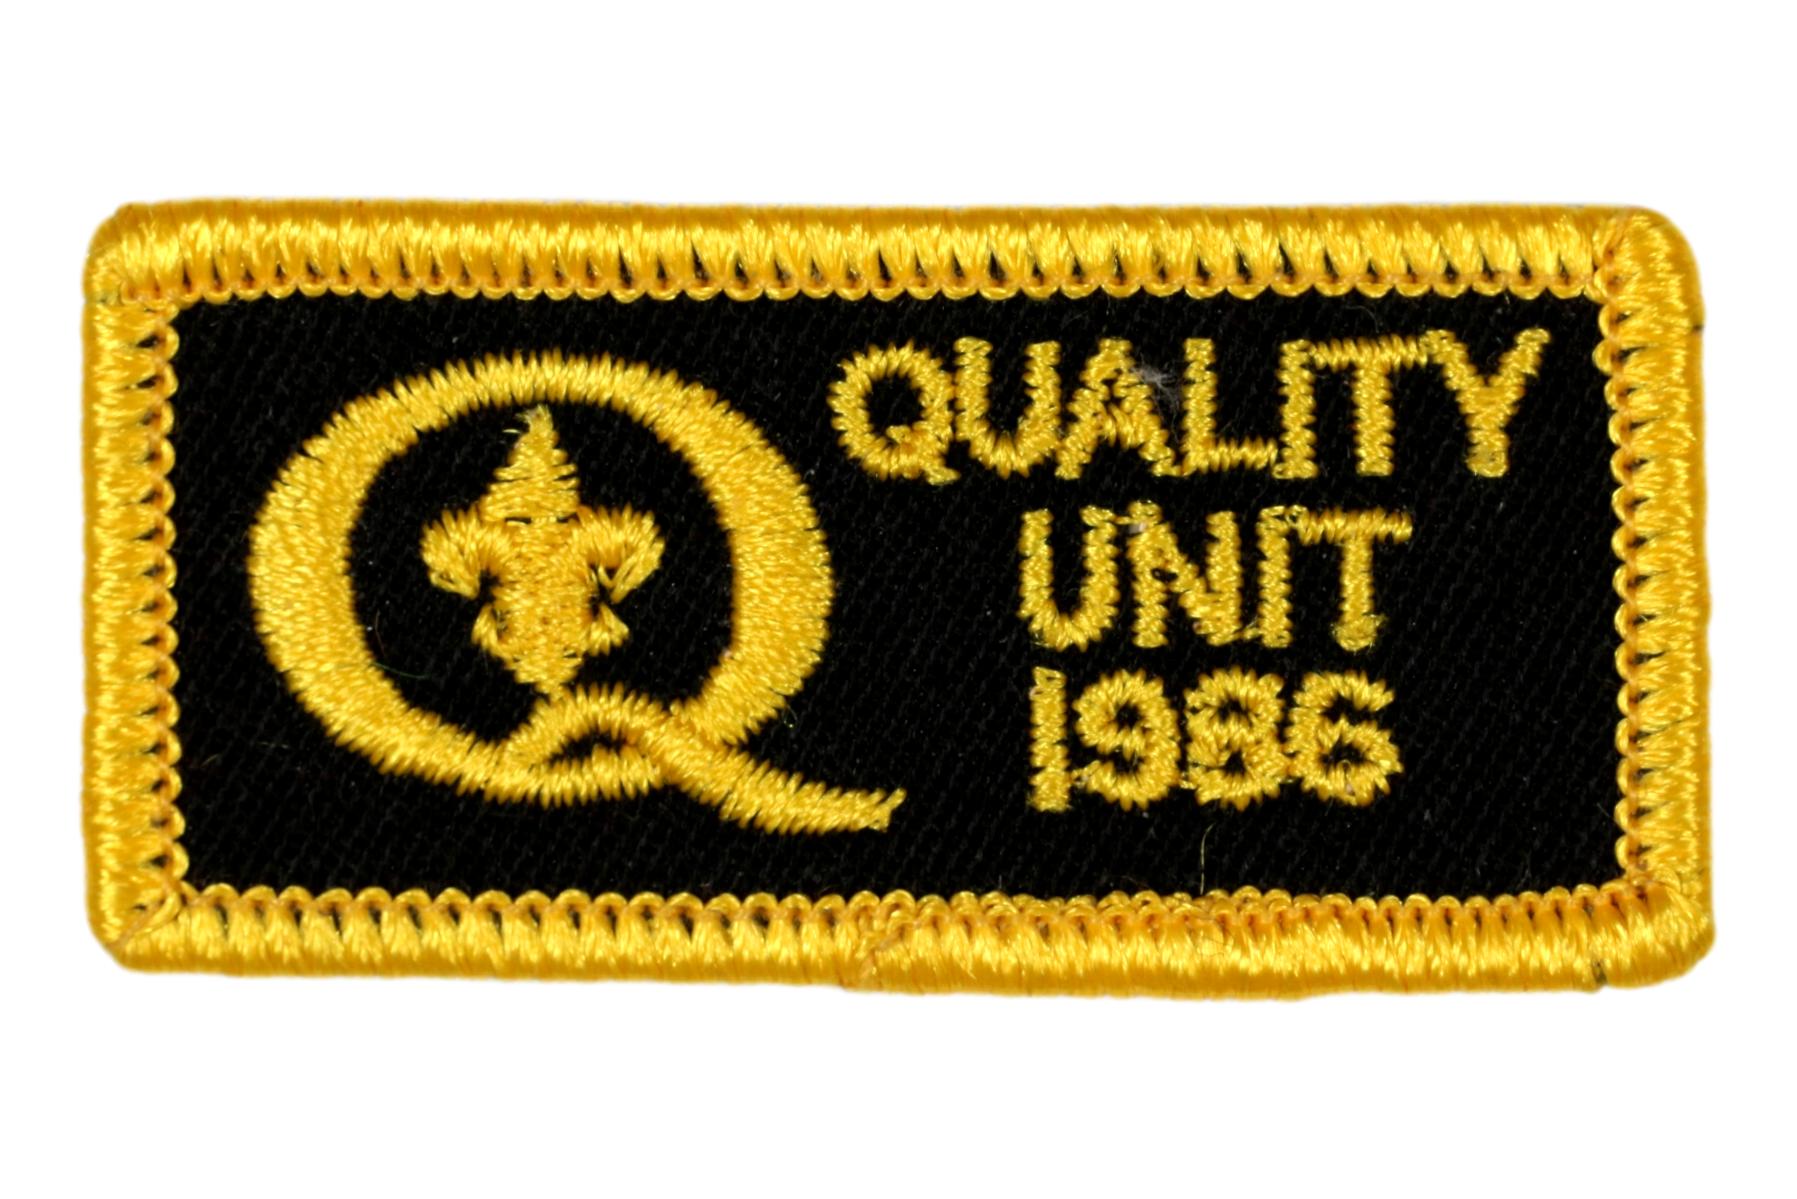 1986 Quality Unit Patch